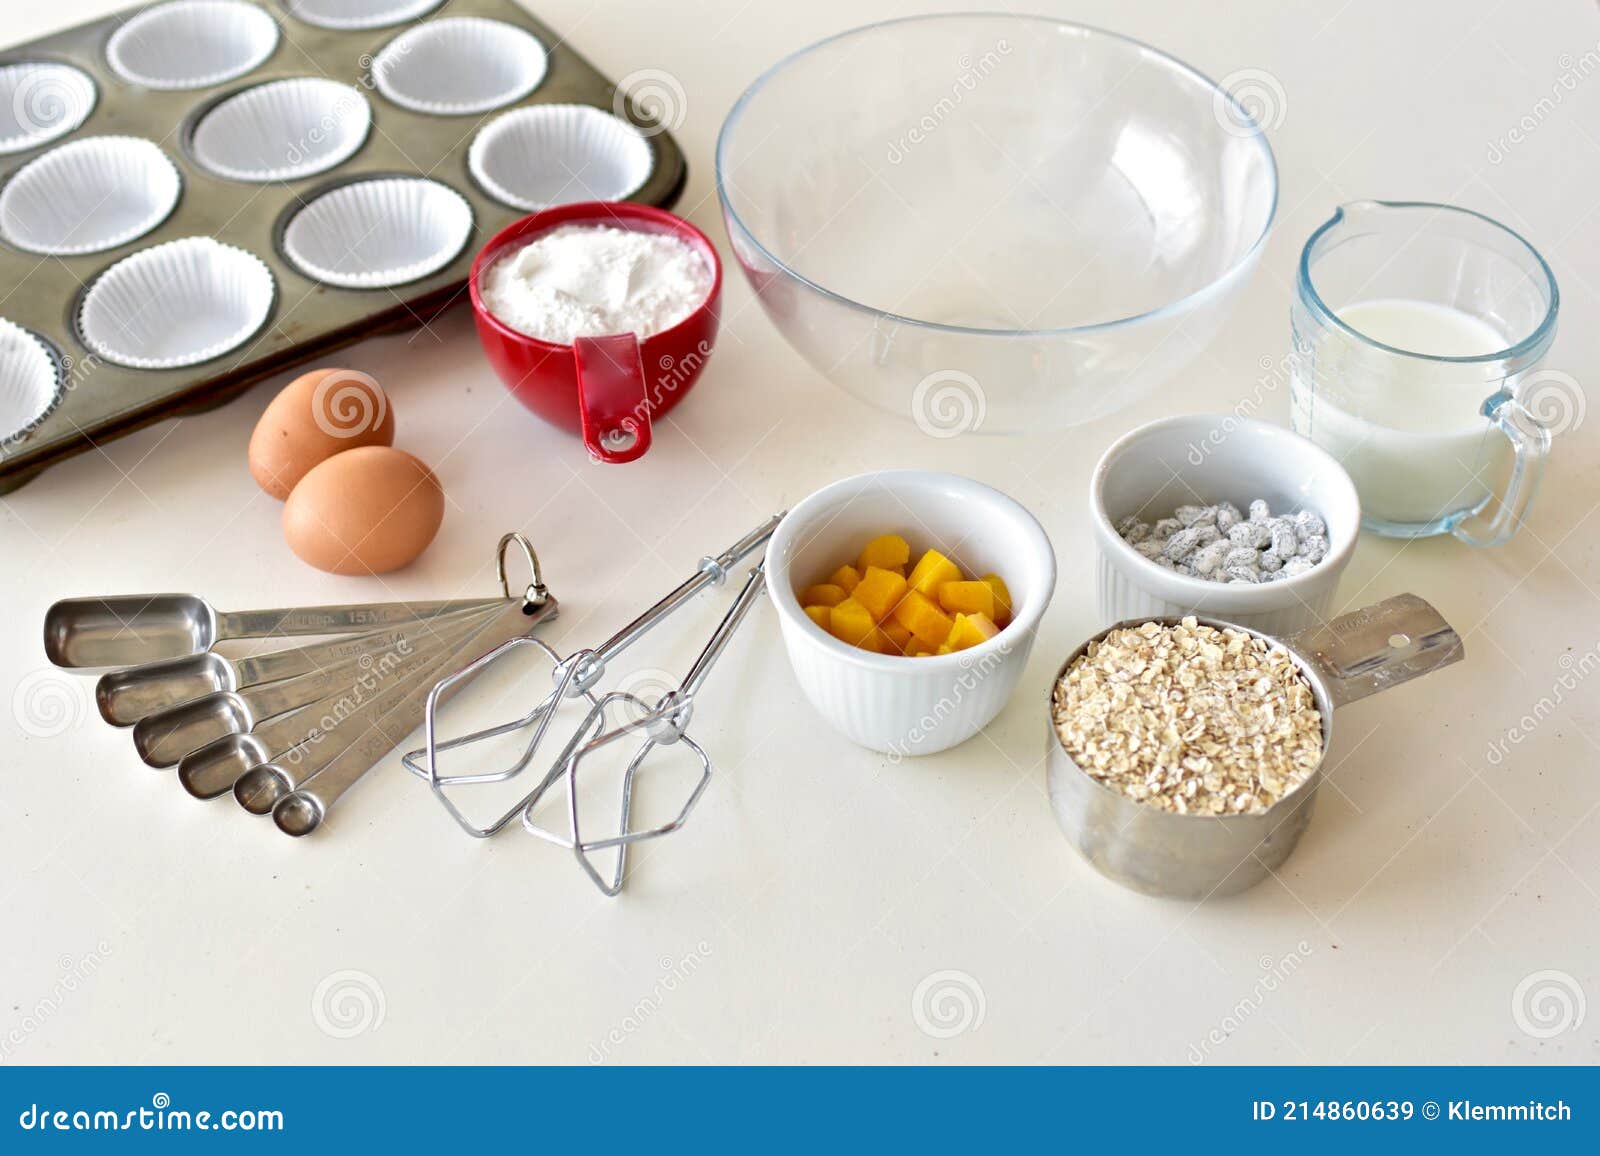 Ingredienti E Utensili Da Cucina E Ciotole Pronti Per La Cottura a Casa  Immagine Stock - Immagine di farina, cucina: 214860639